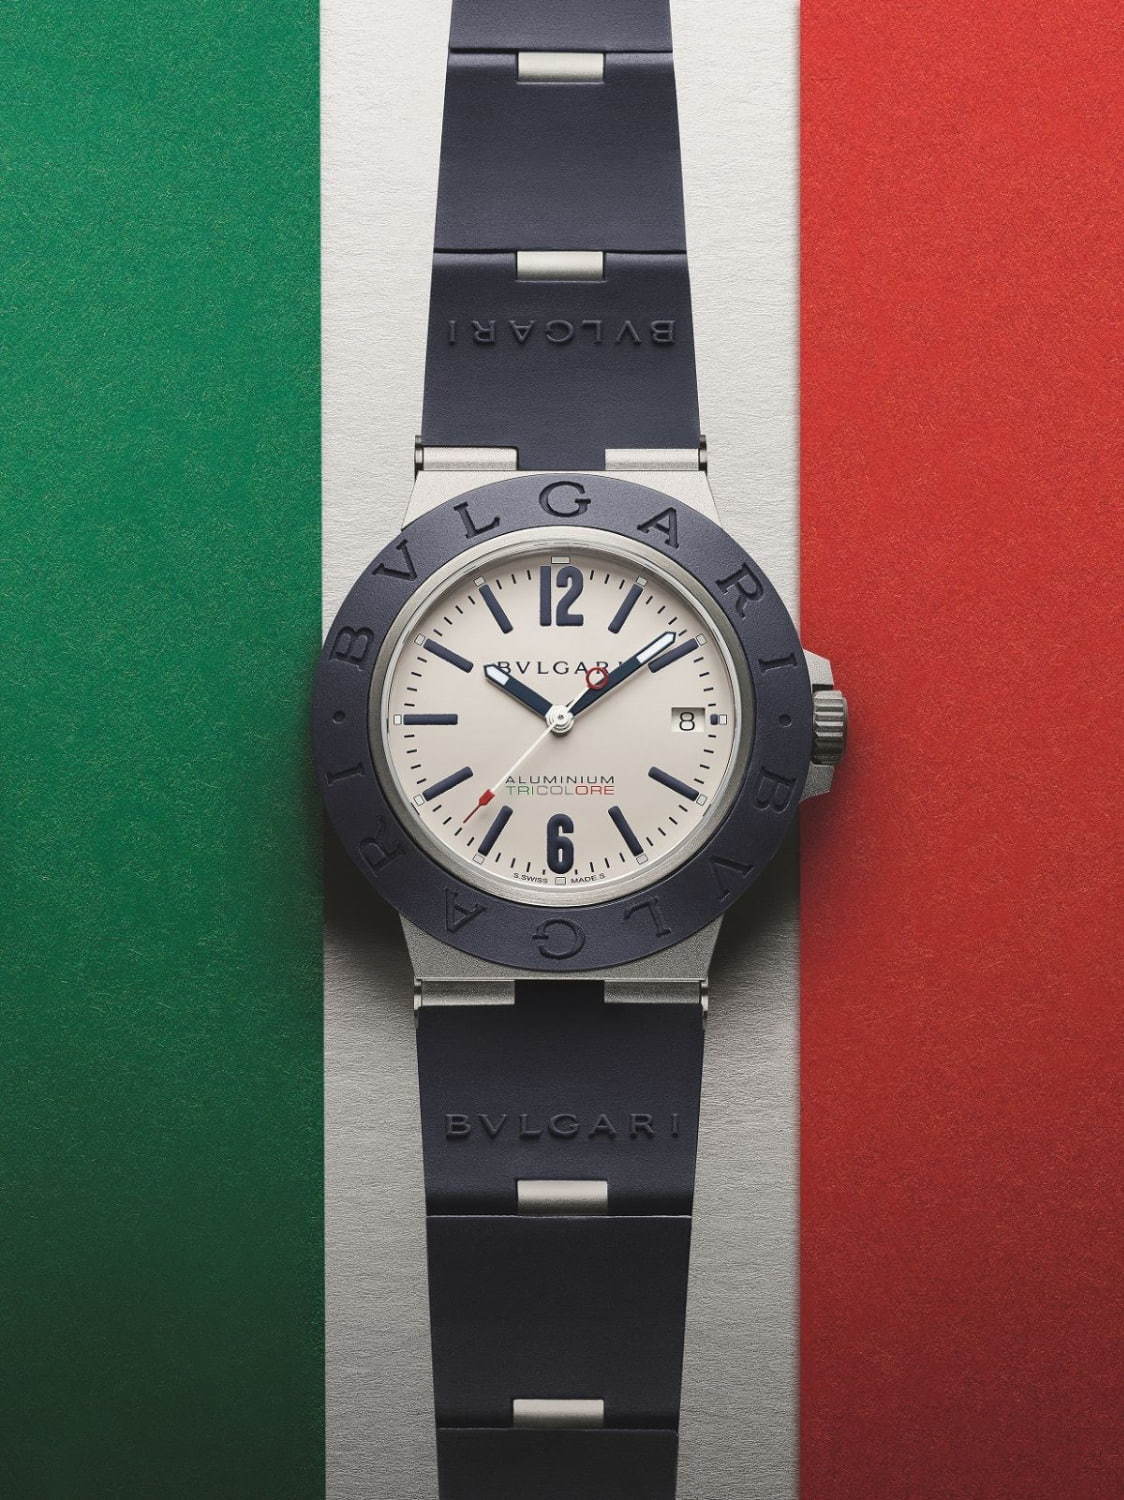 ブルガリの腕時計「ブルガリ アルミニウム」イタリアのトリコロール用 